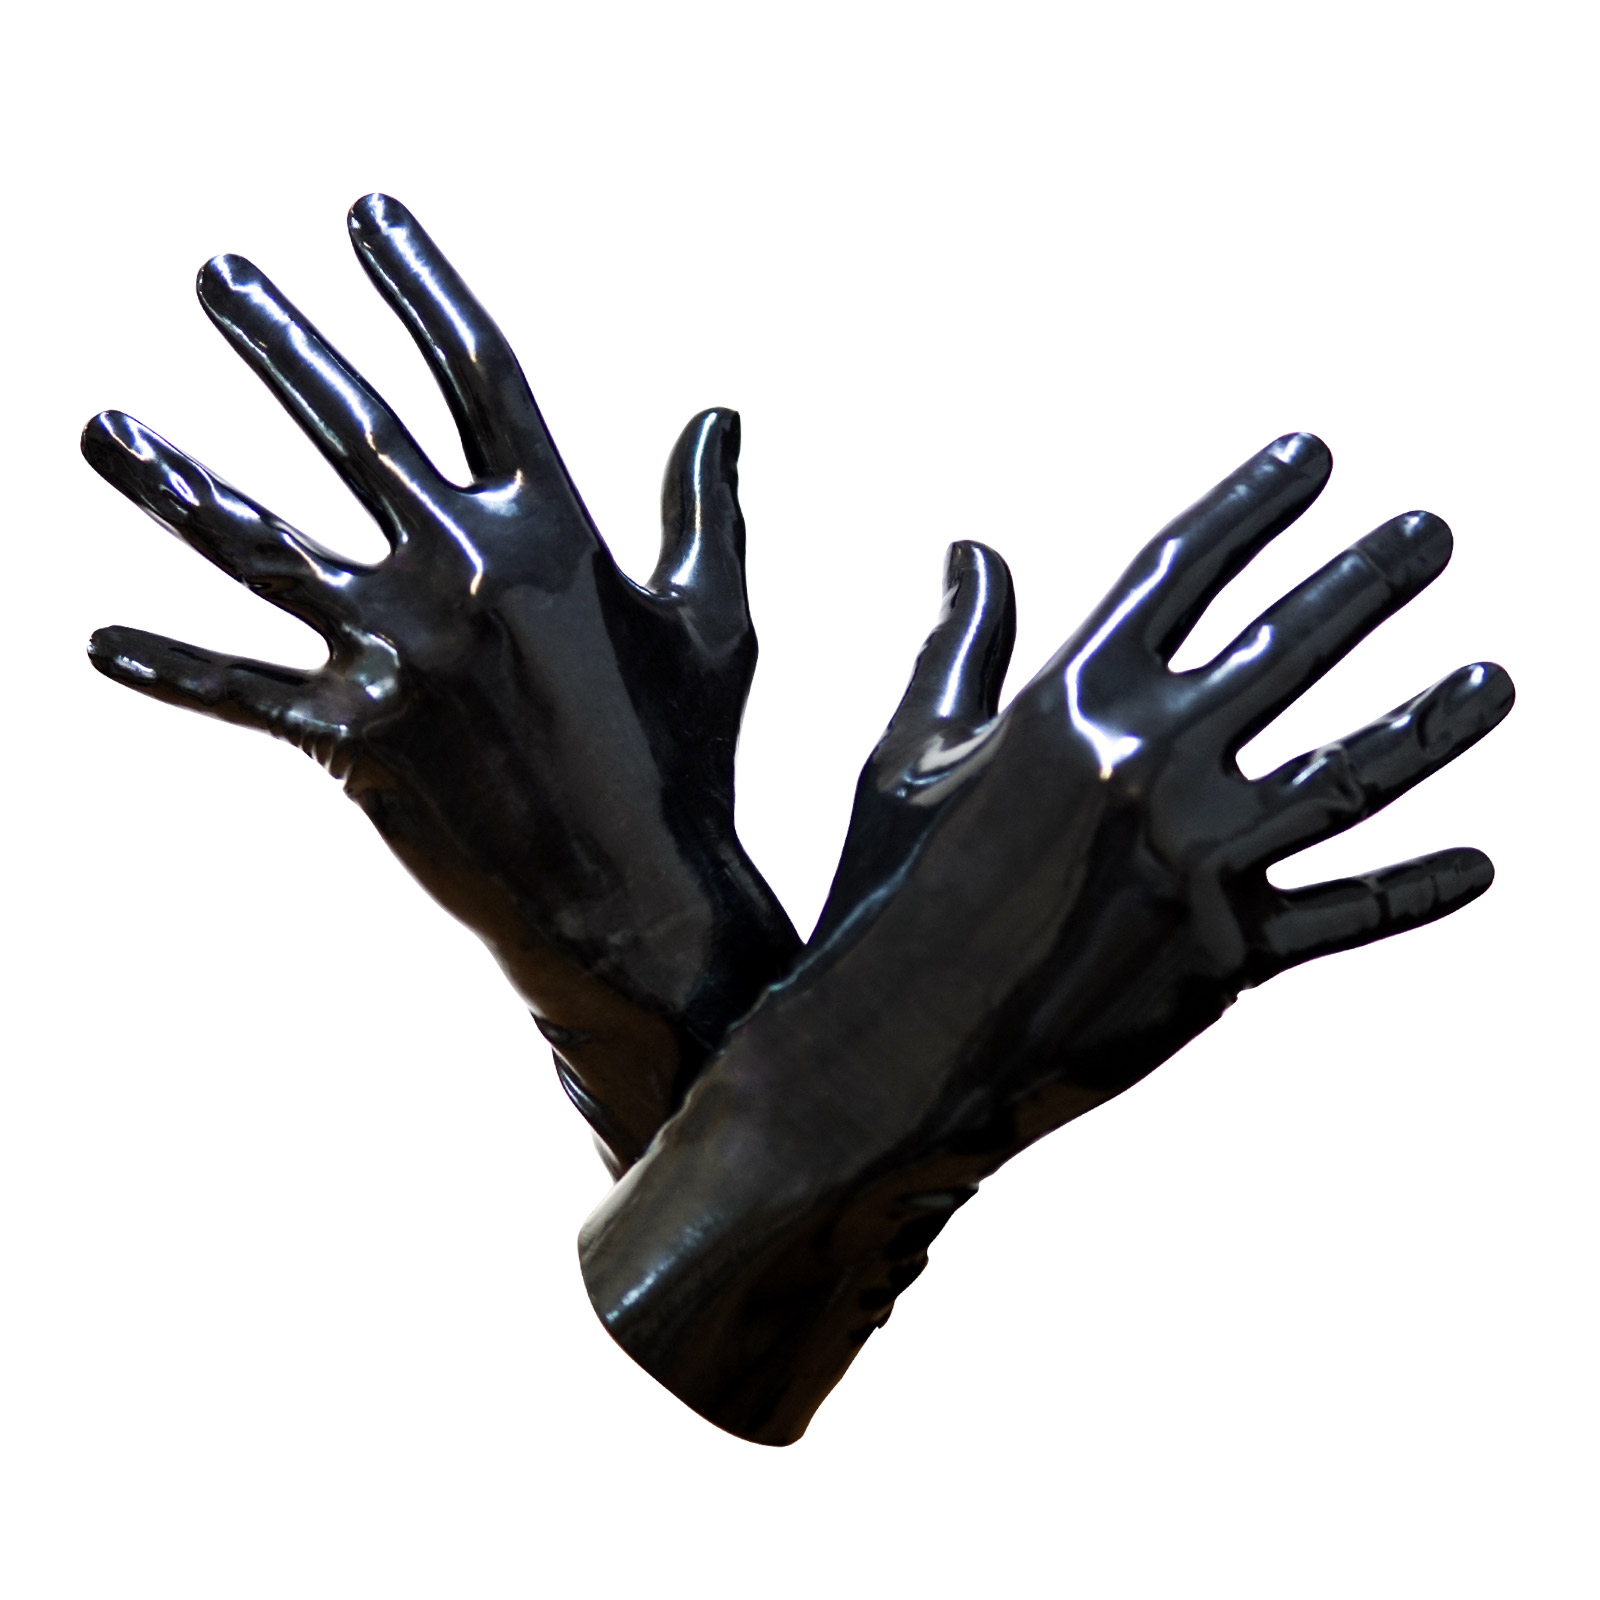 Toylie Latex Handschuhe «L» schwarz, nahtlos, mit anatomischer Passform